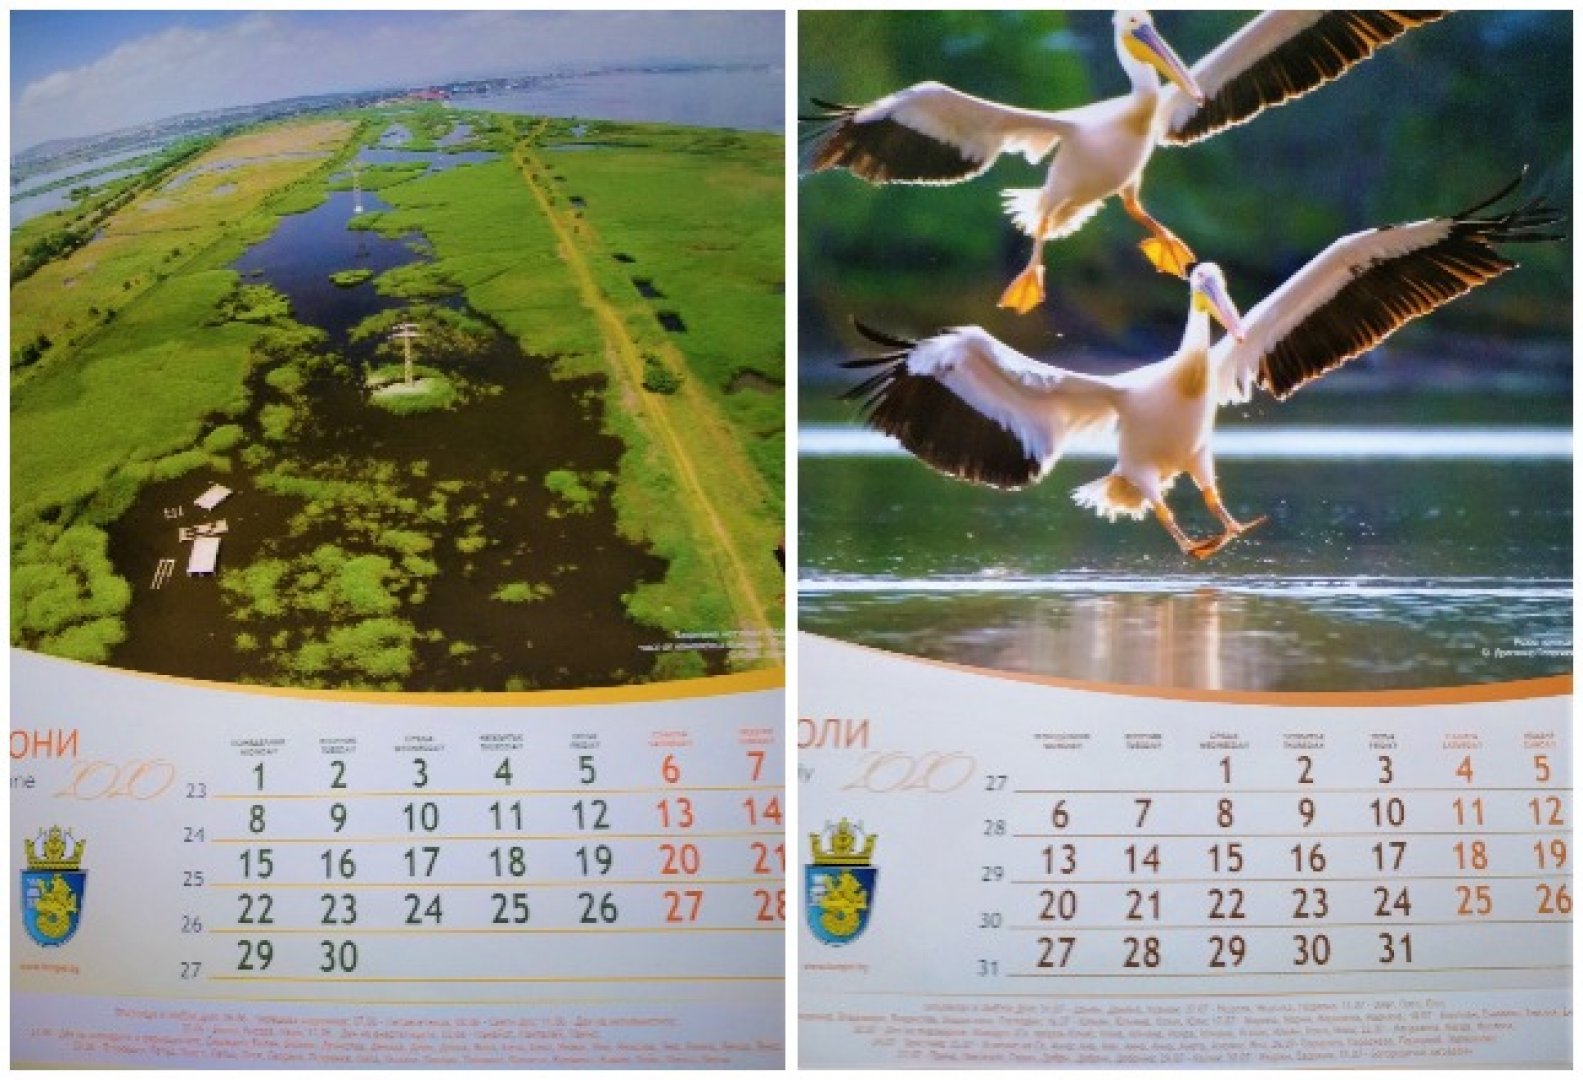 Как езерата и птиците се превърнаха в запазена марка на Бургас - E-Burgas.com